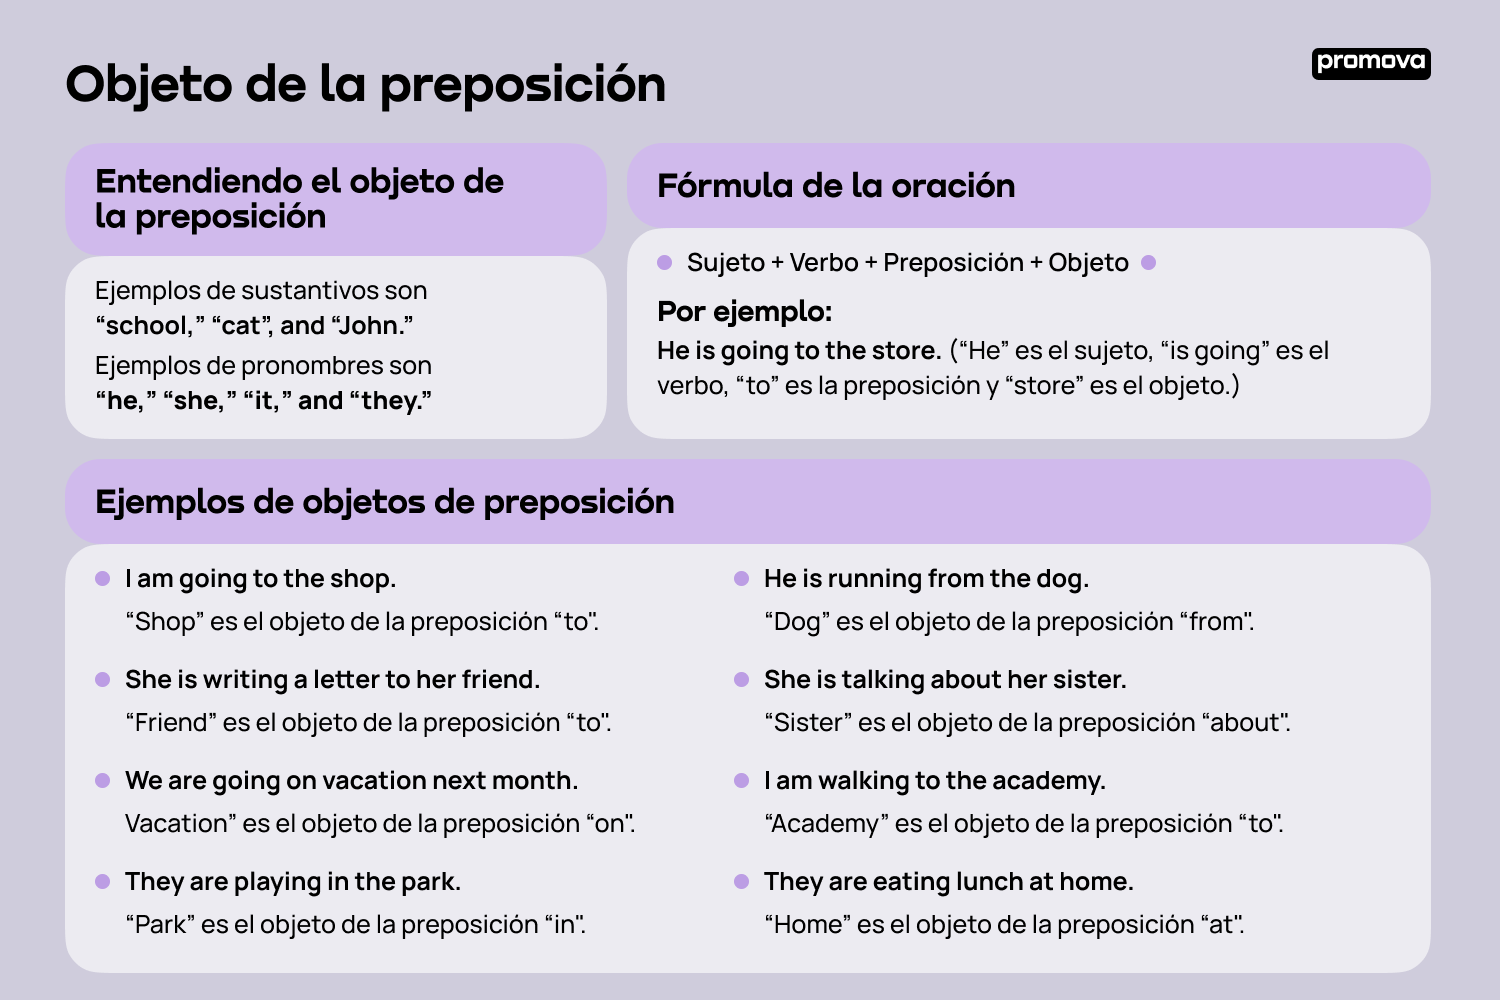 Mejora tu comprensión del objeto de la preposición en español